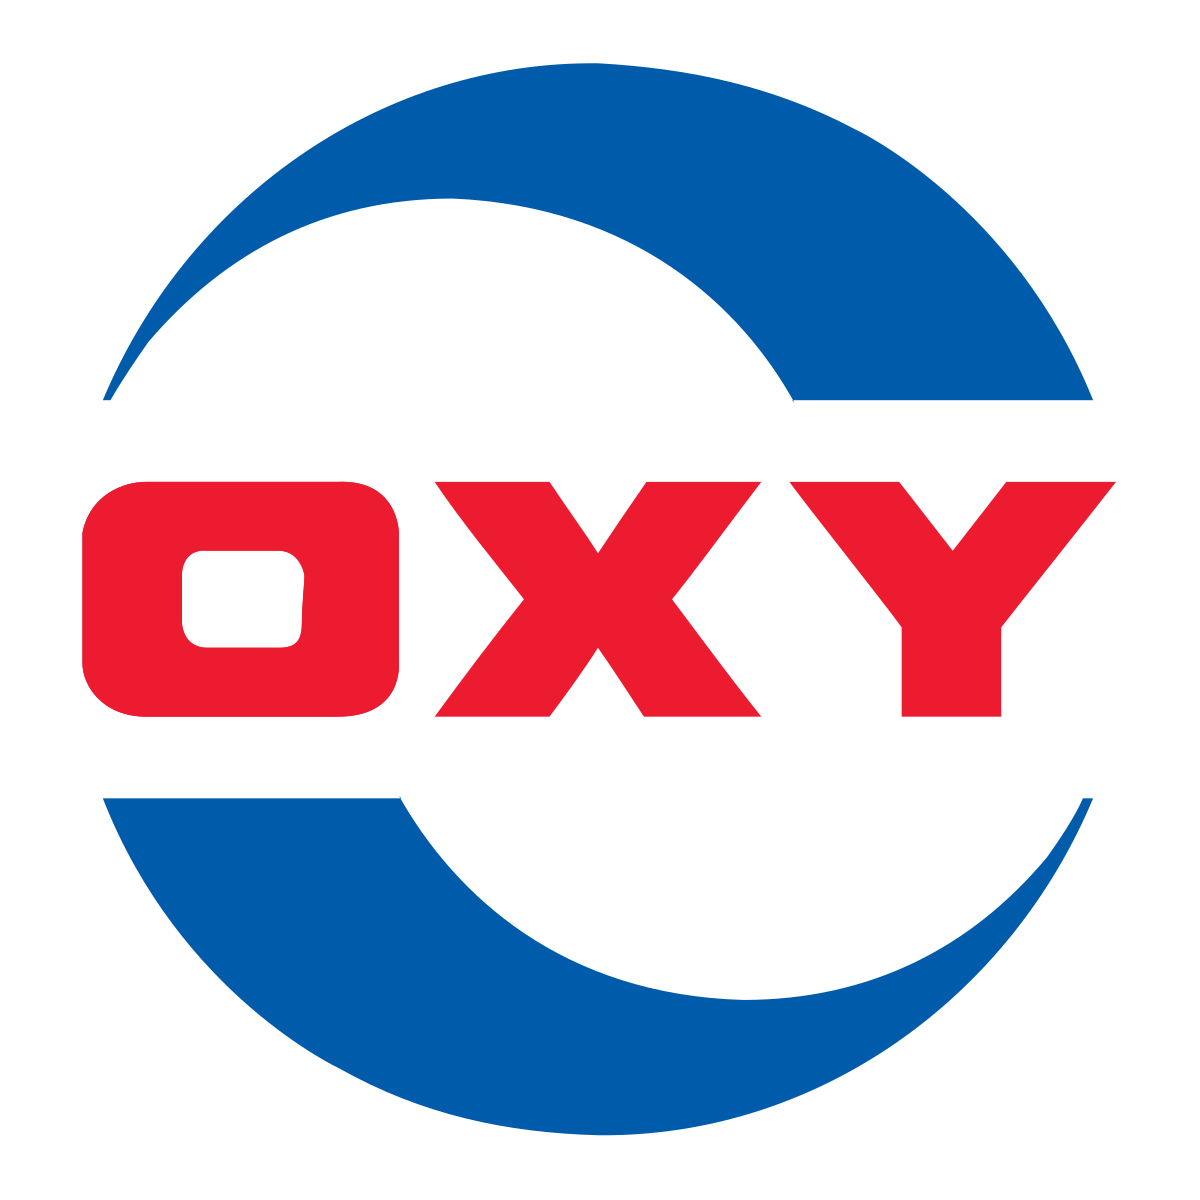 Occidental-Petroleum-Corporation-logo